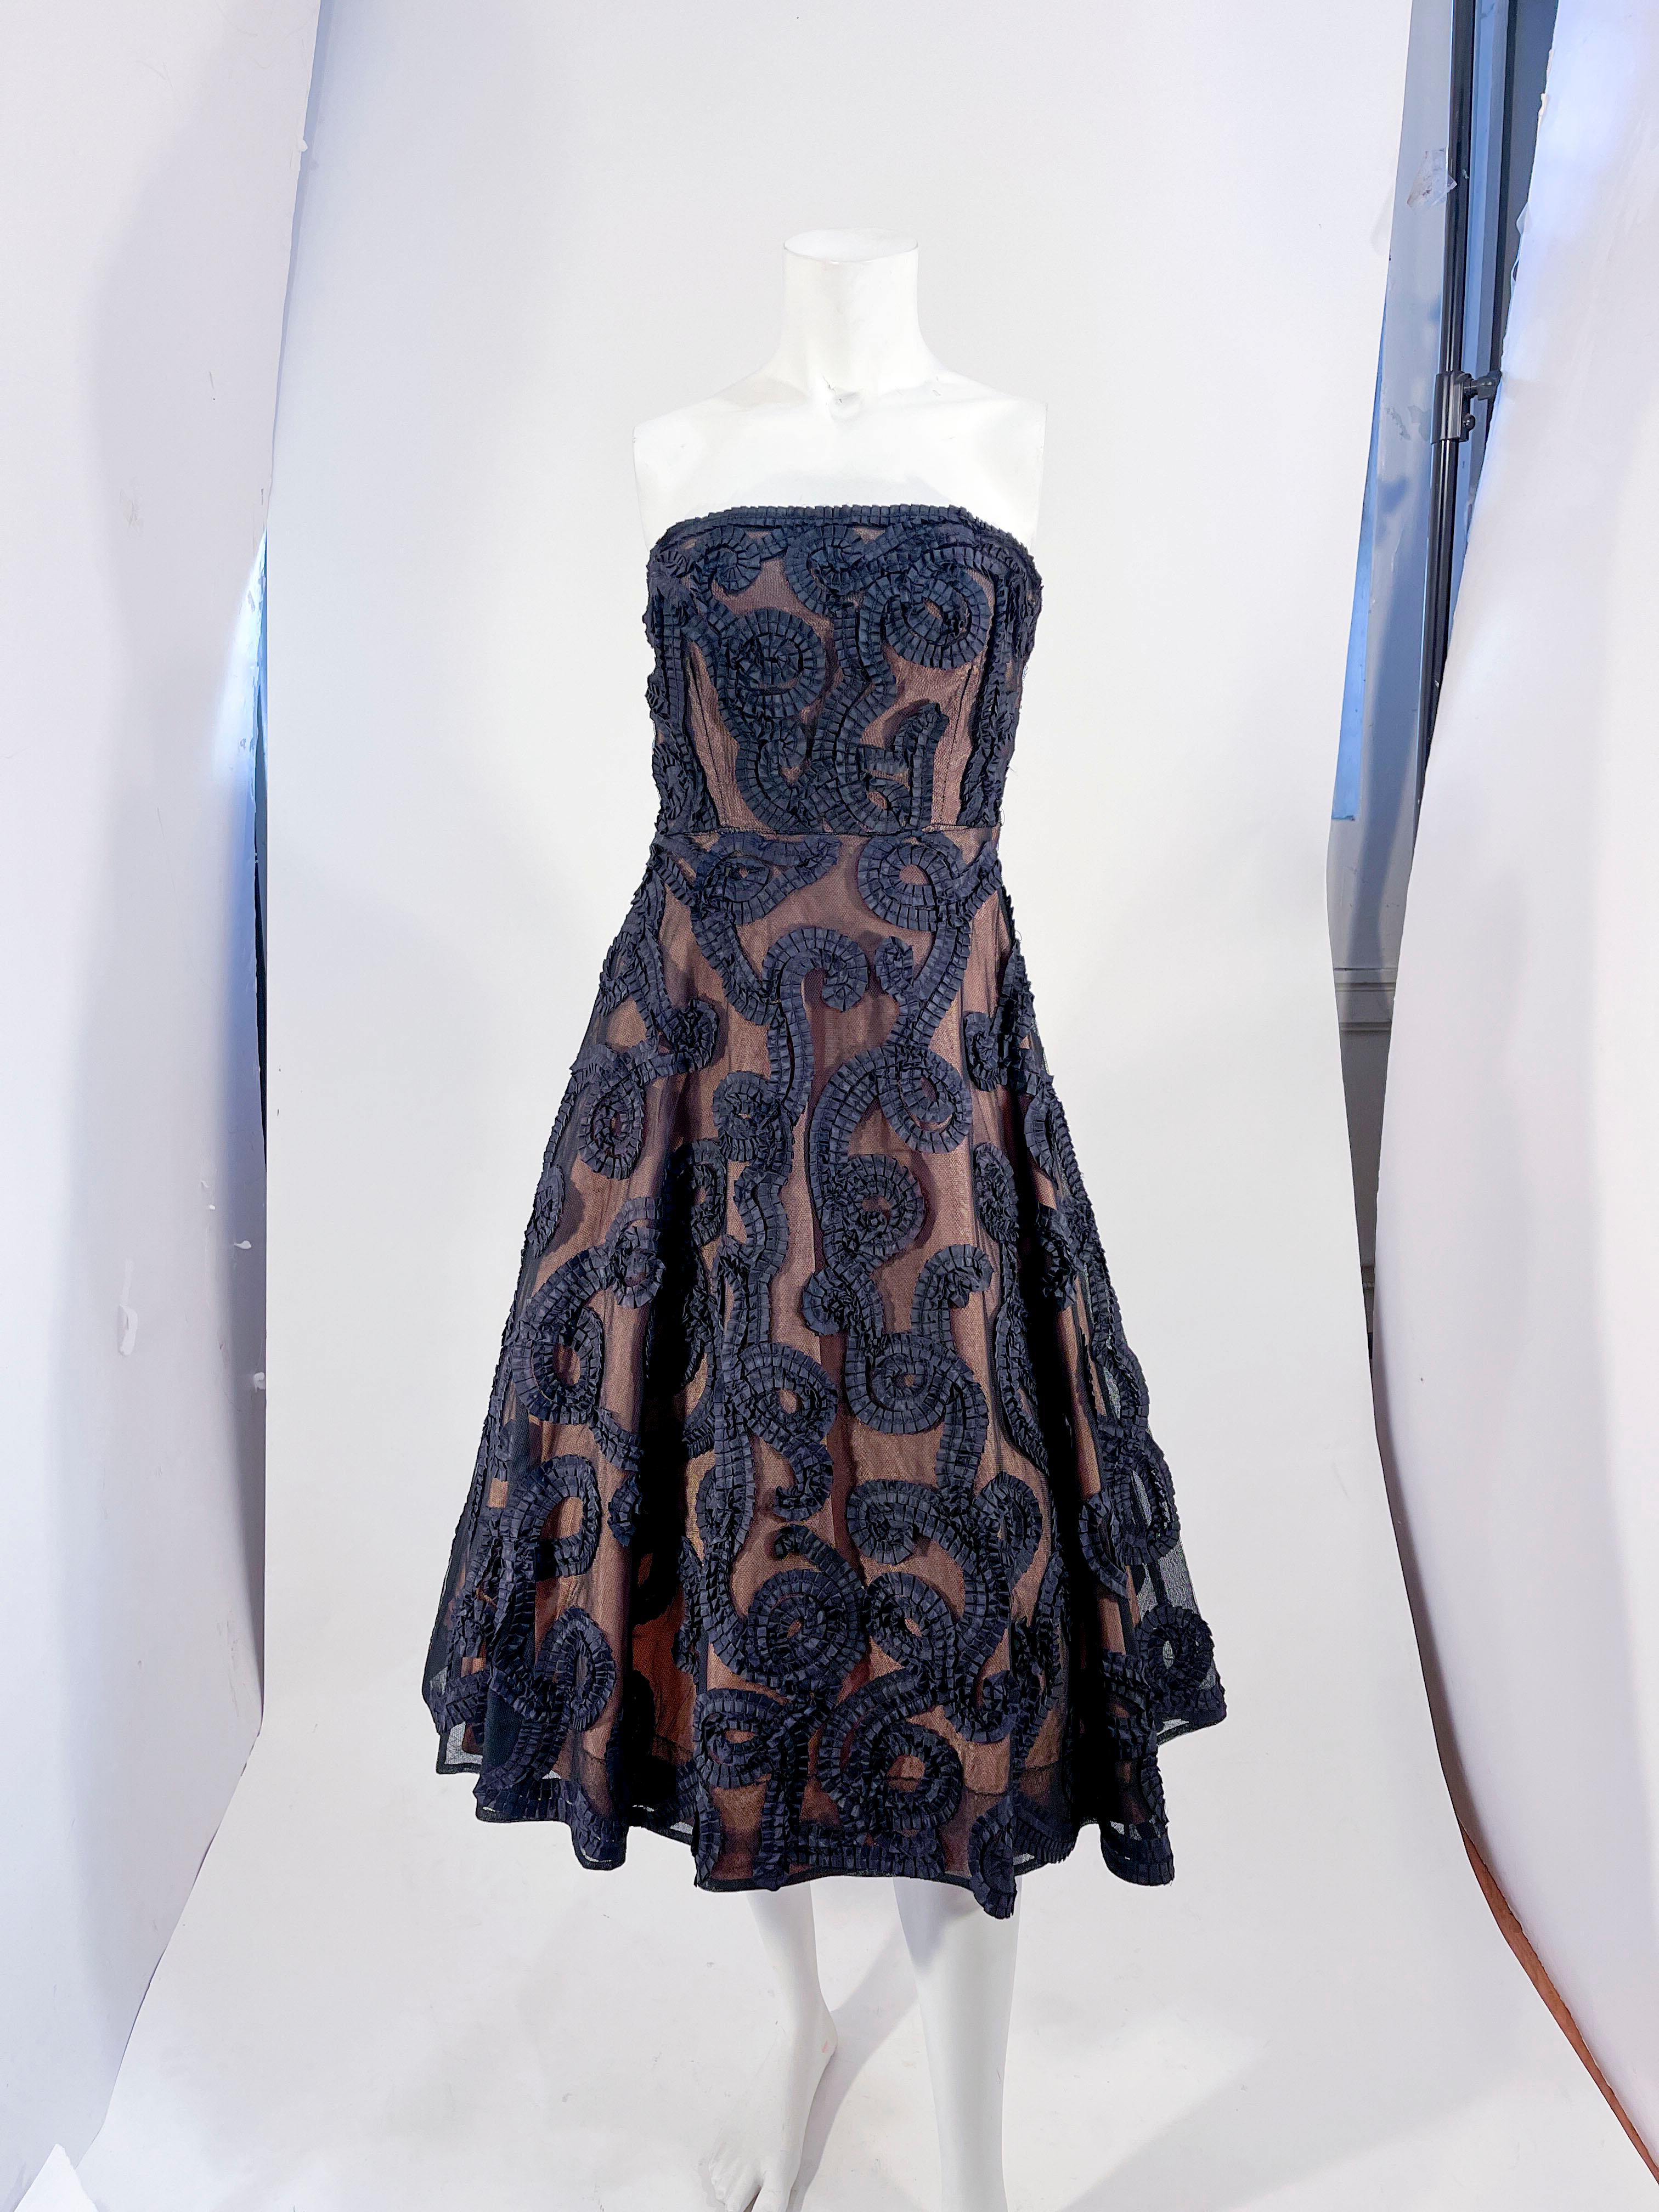 1950er Jahre schwarz nackt Illusion trägerlosen Partykleid mit plissierten Band sous-tache in einem skurrilen Lockenmuster durch die Gesamtheit des Kleides. Der Sous-Tache ist auf schwarzem Tüll angebracht, der über einen nudefarbenen Taft gelegt